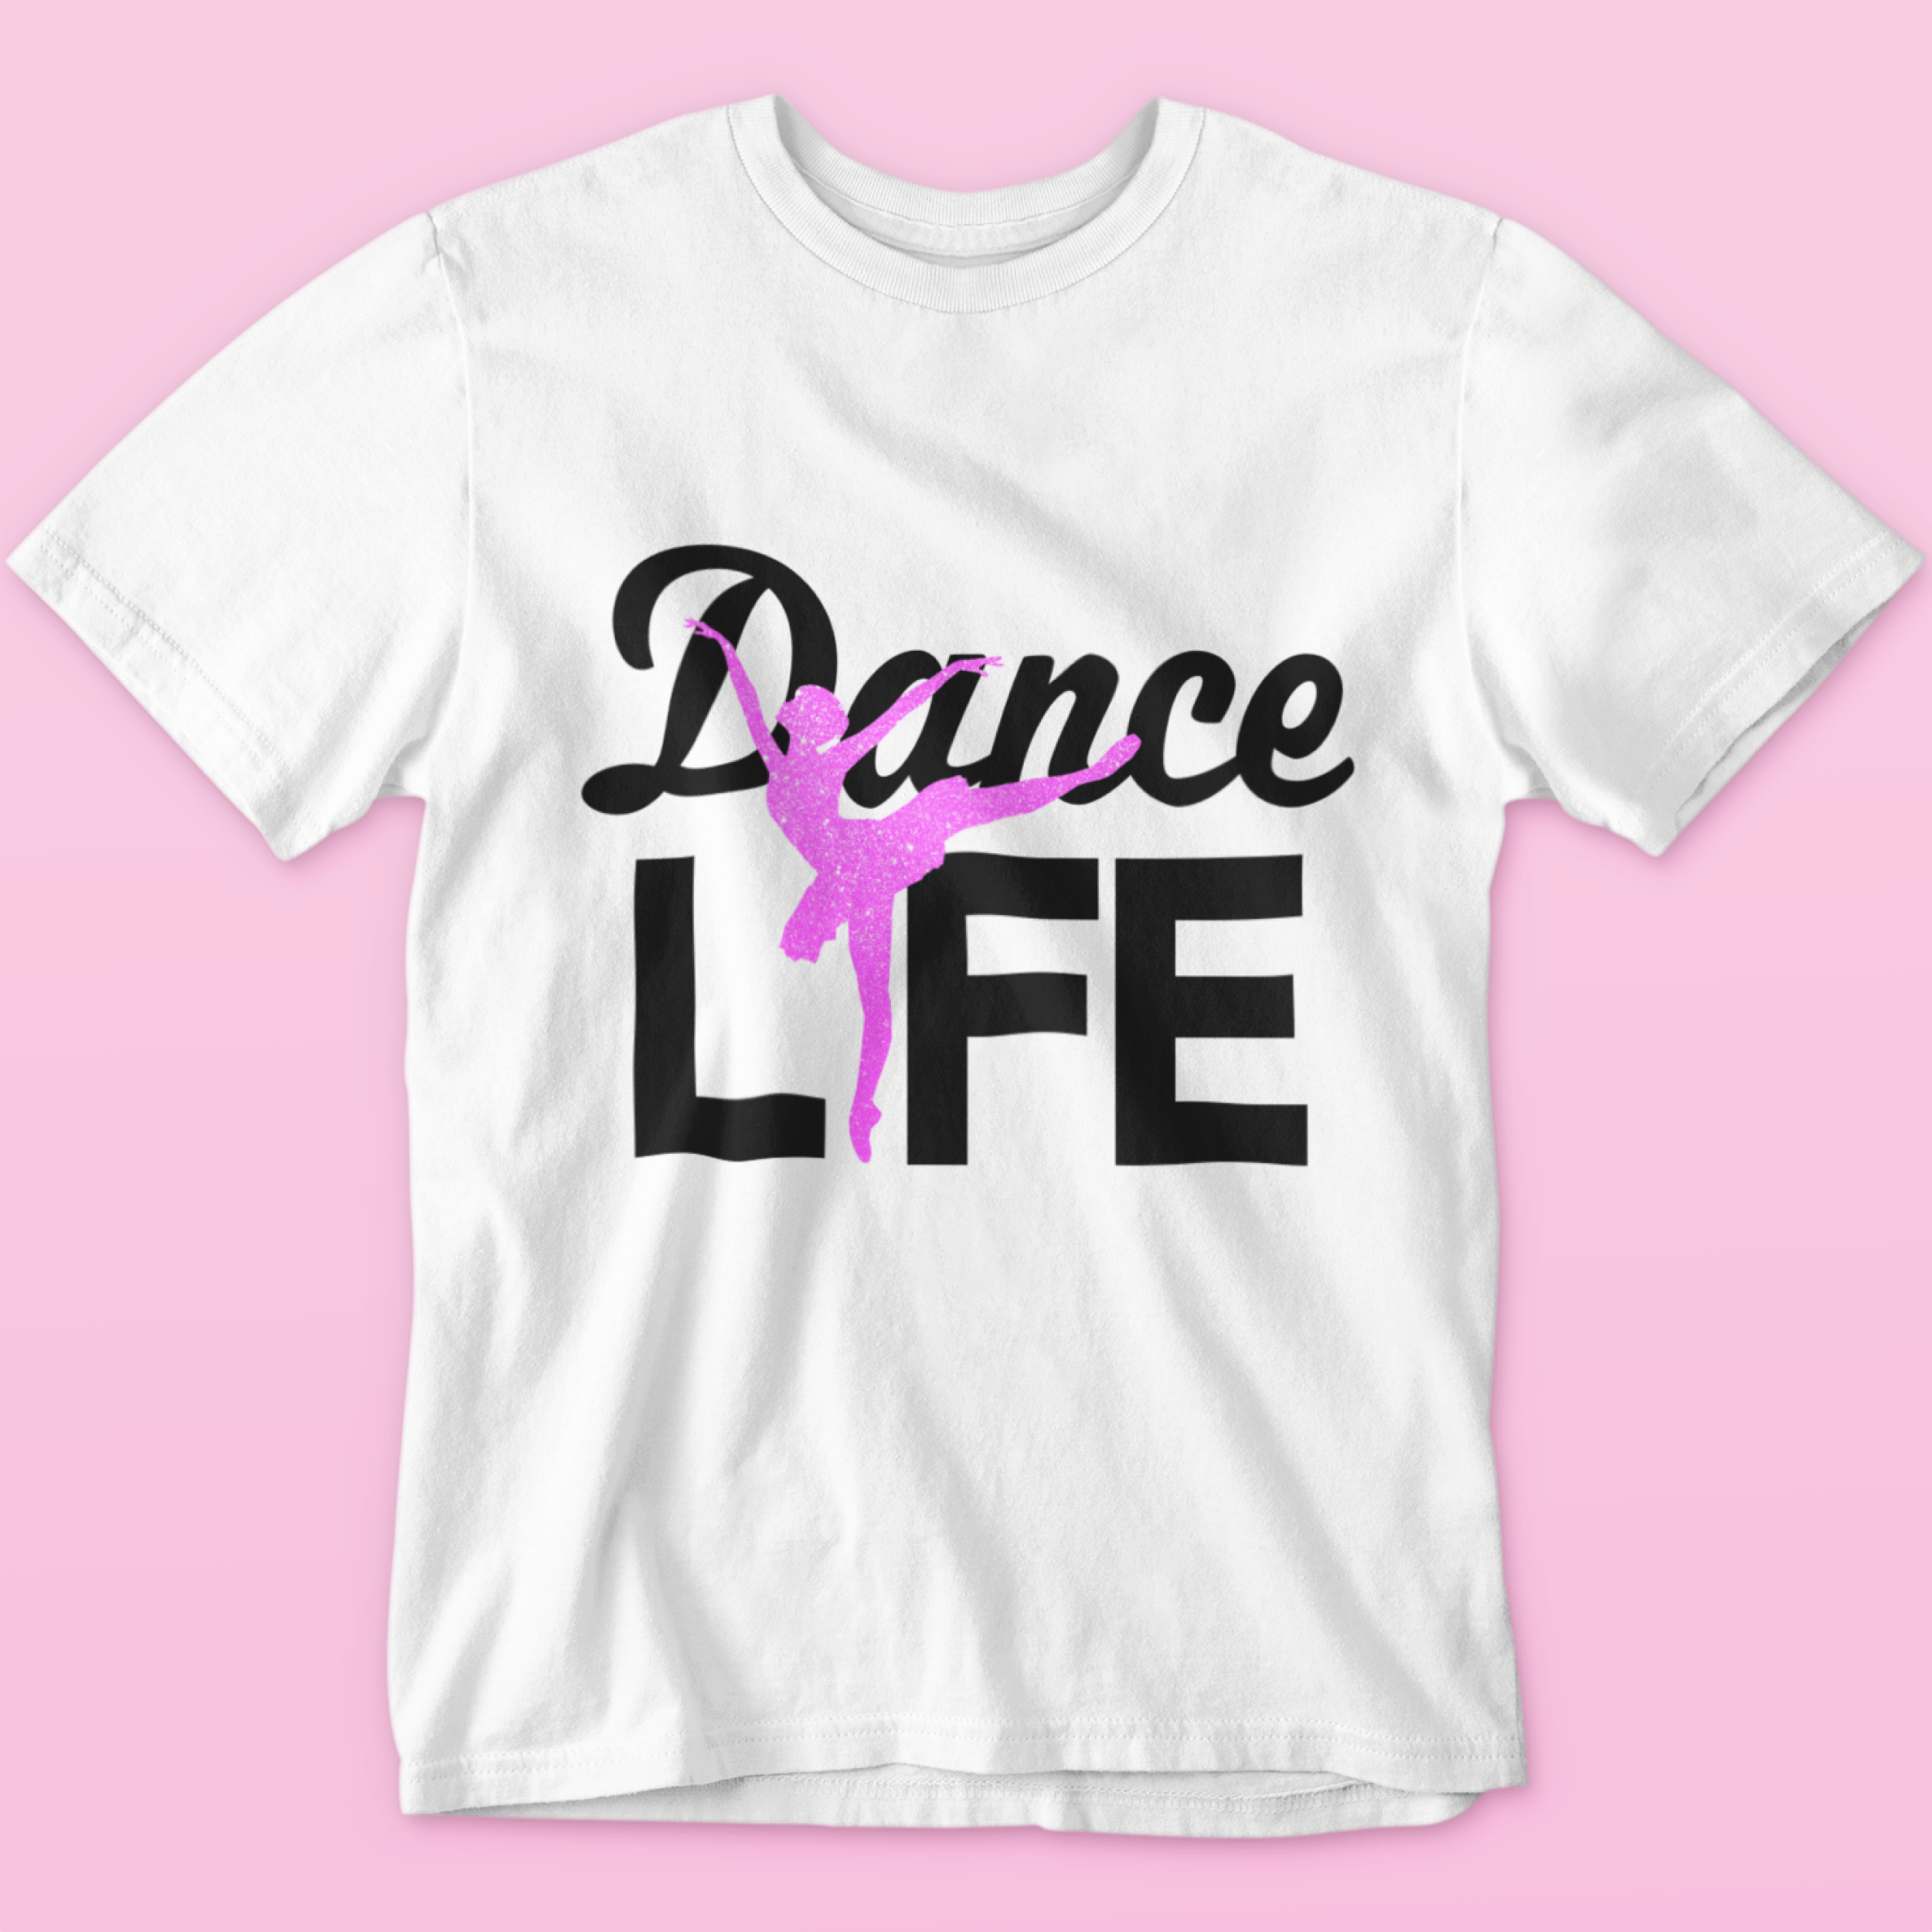 Dance life glitter tee shirt